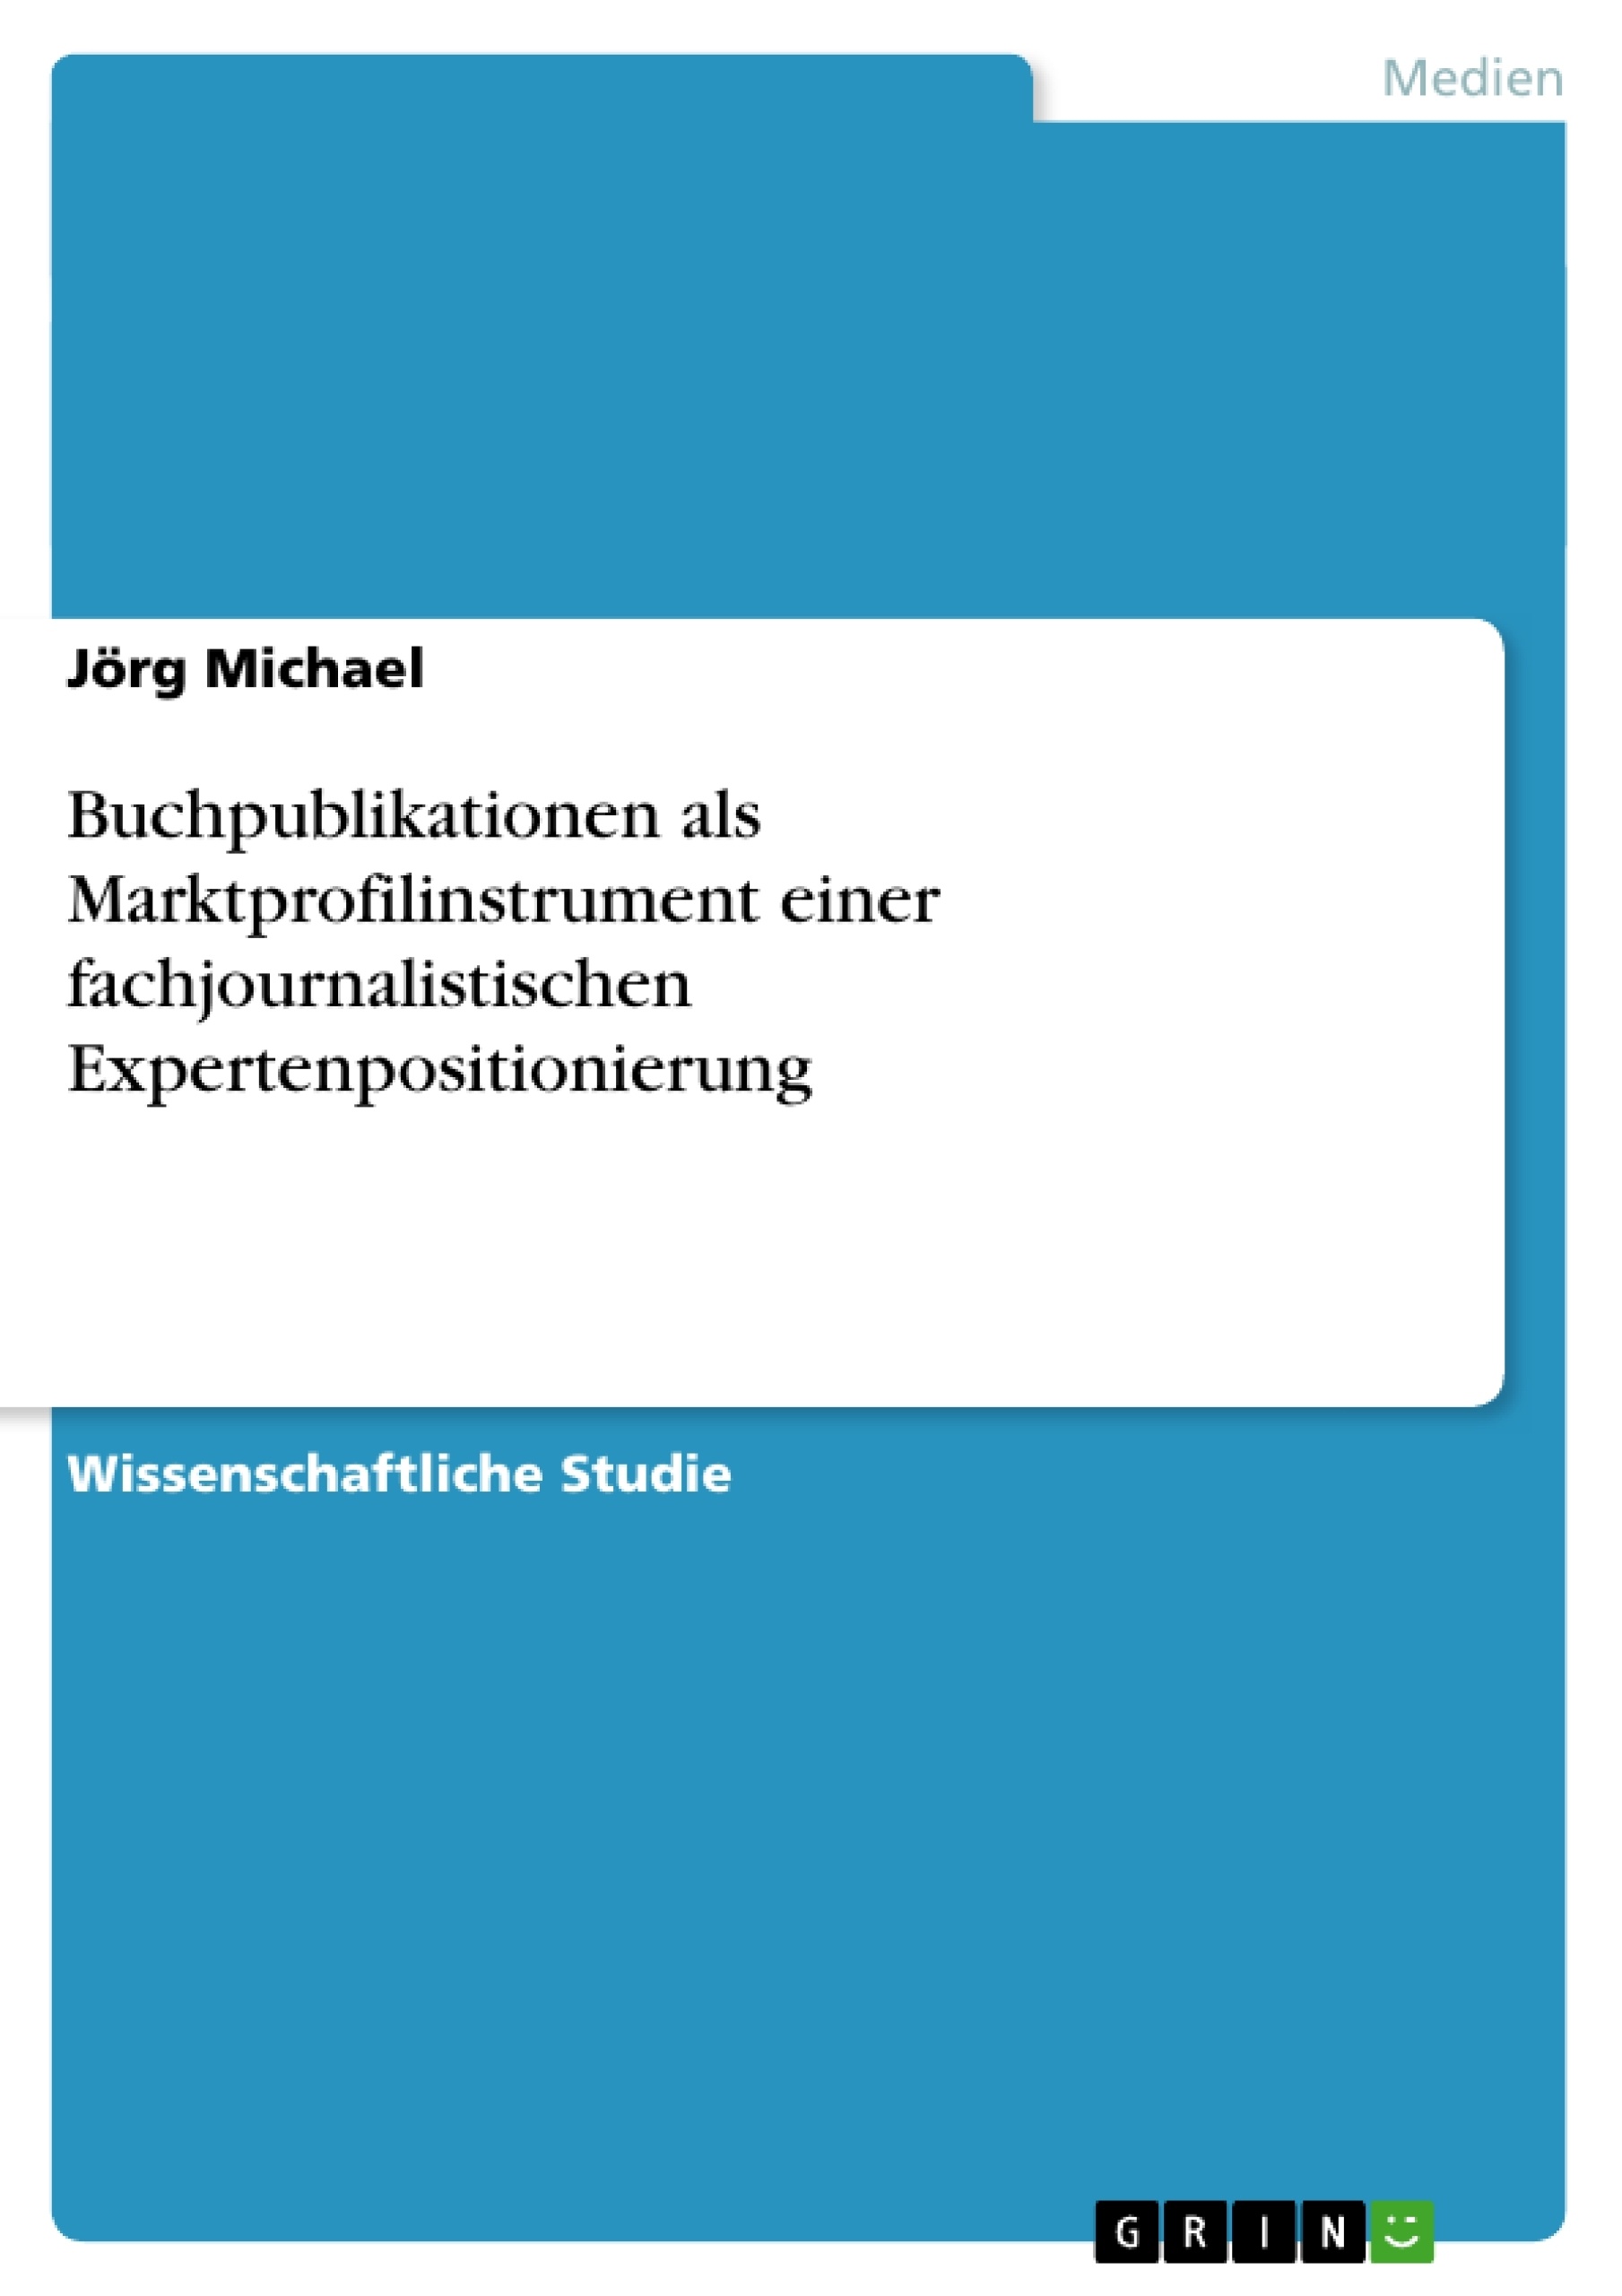 Title: Buchpublikationen als Marktprofilinstrument einer fachjournalistischen Expertenpositionierung